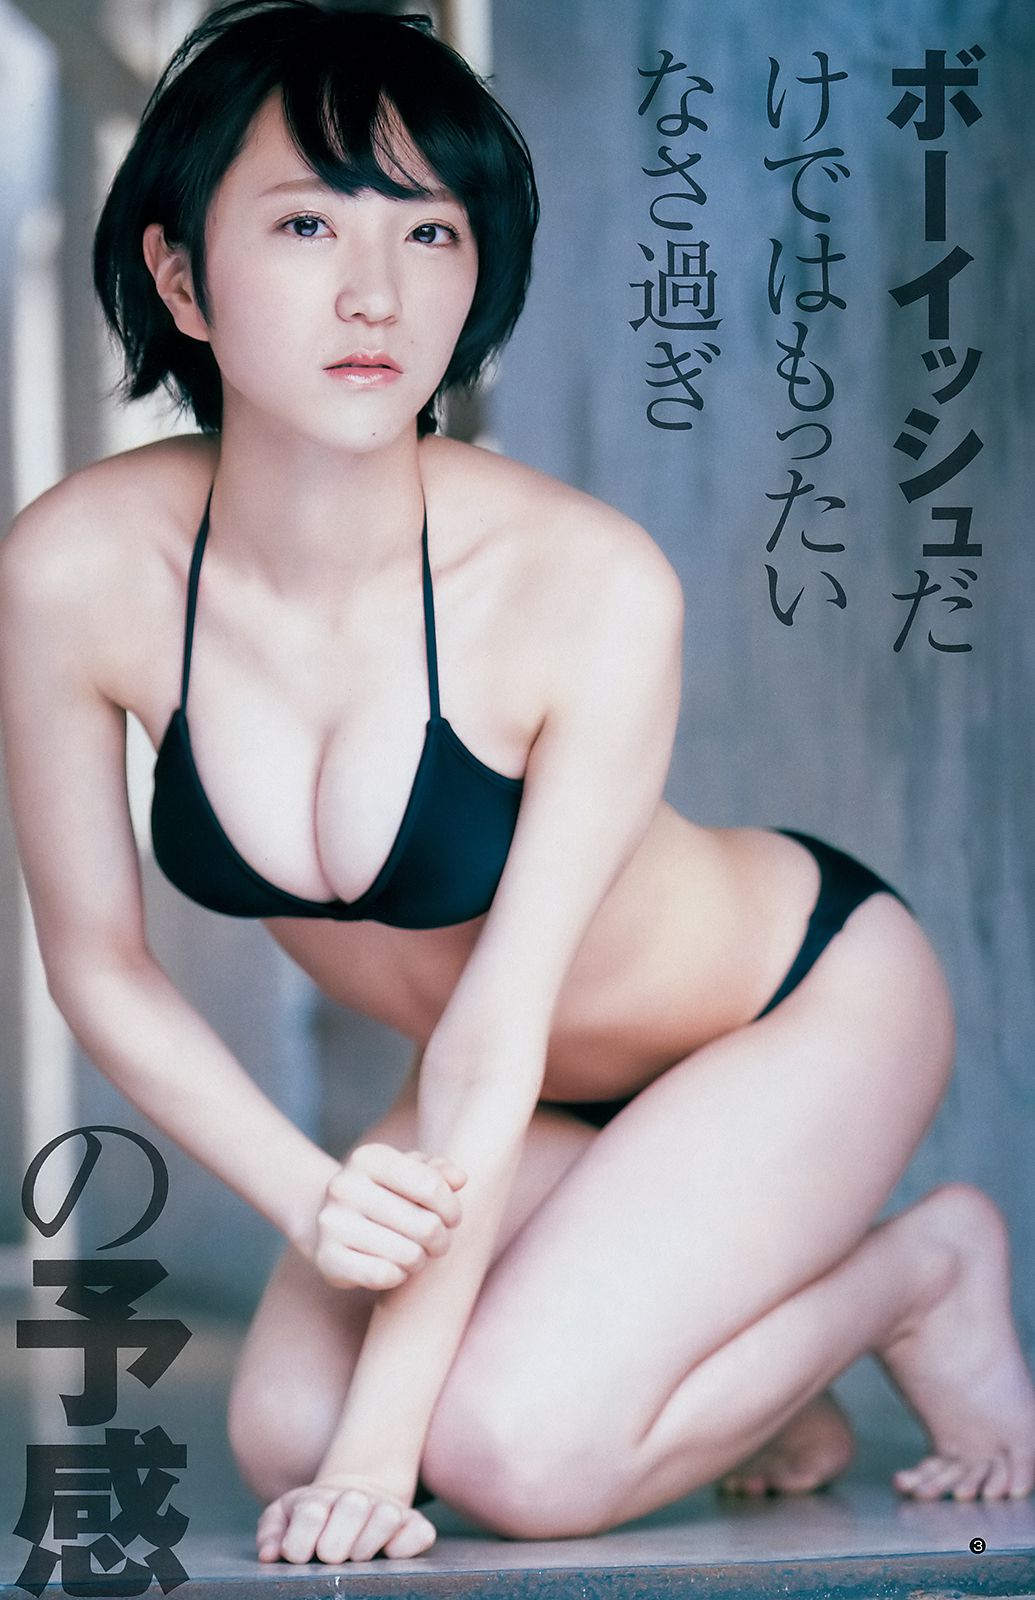 Mio fujiki free porn photos